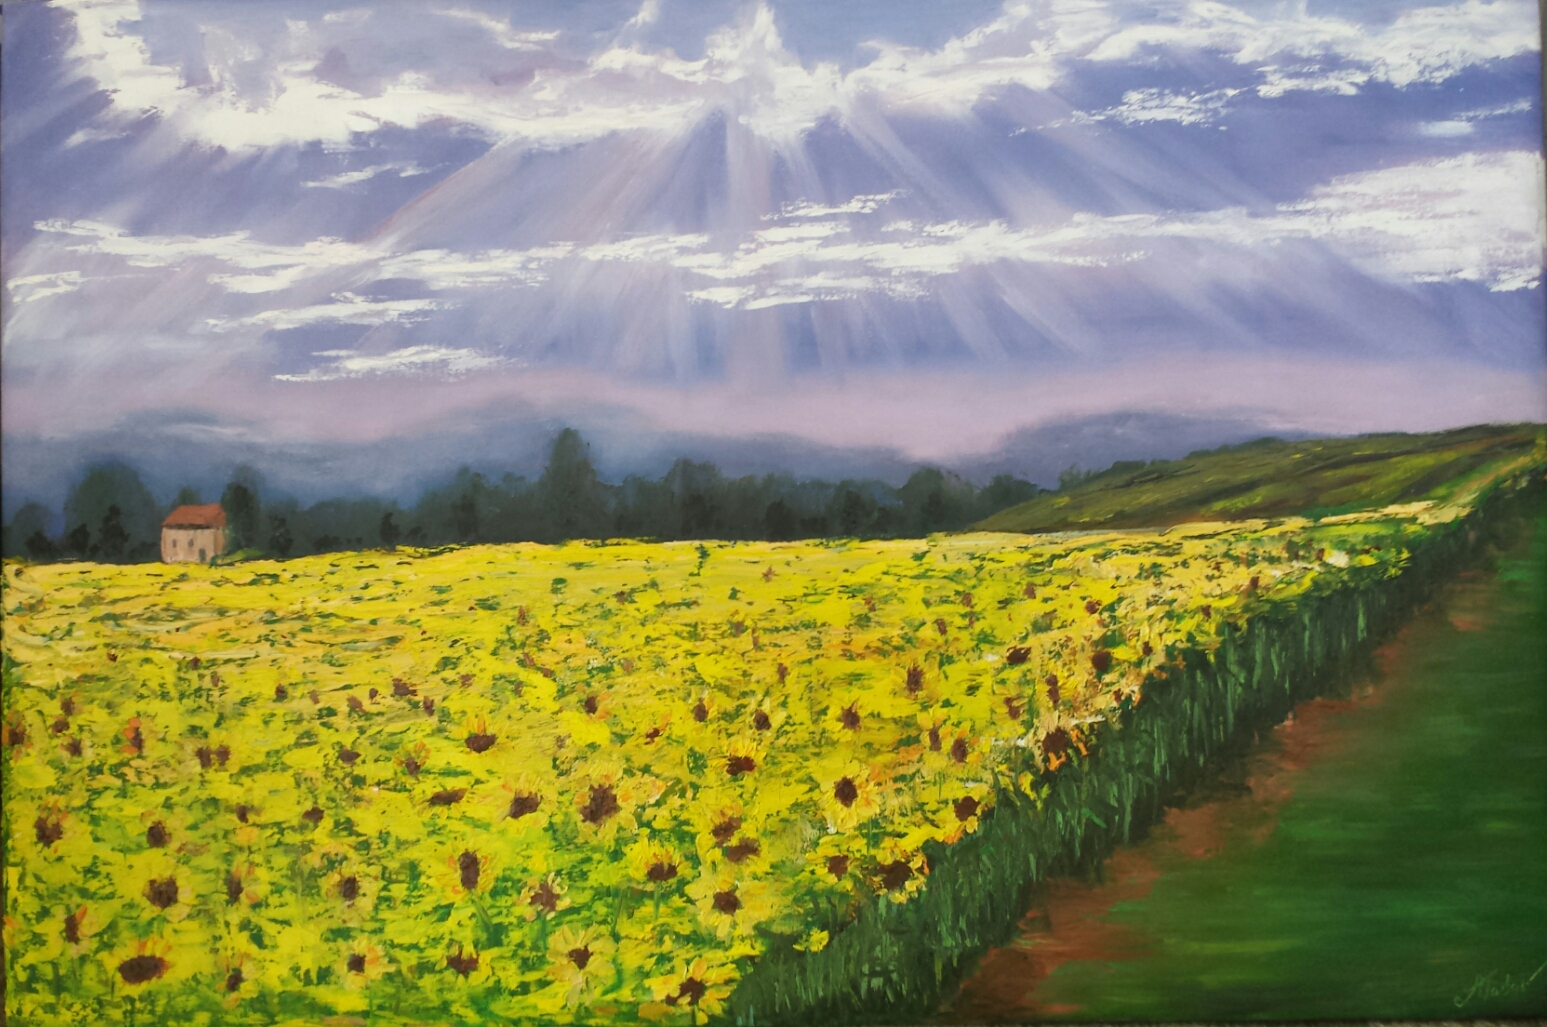 The sunflower field.